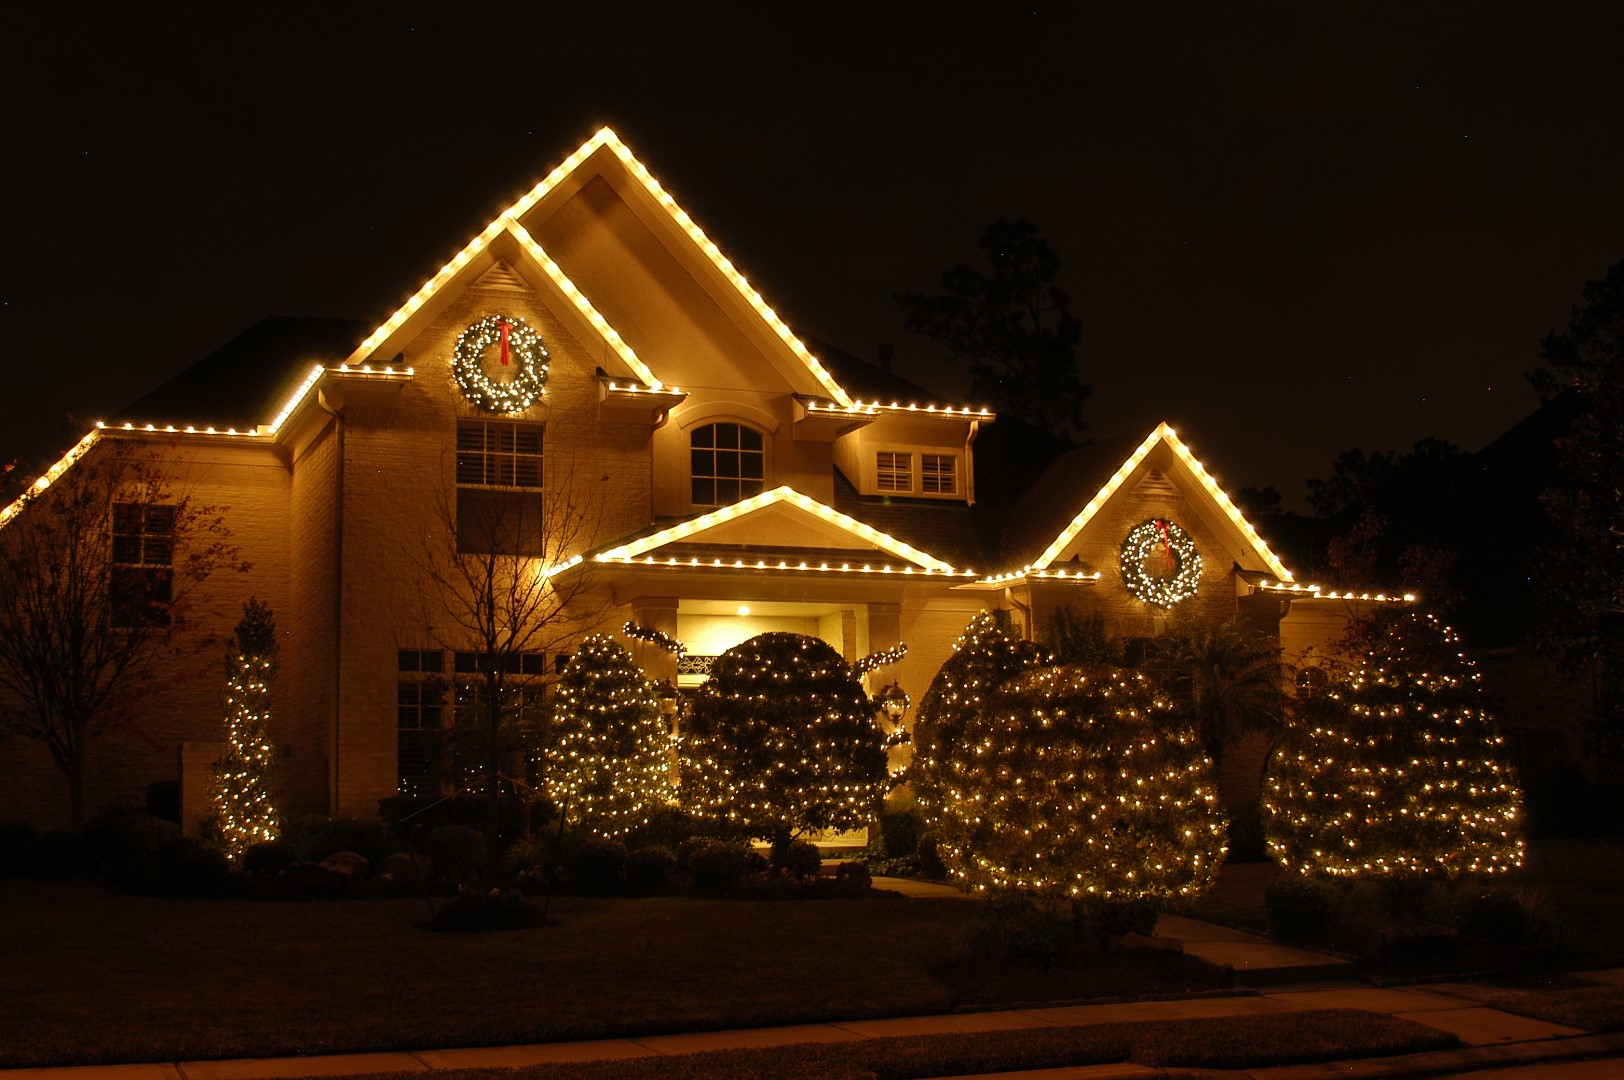 Professional Christmas lights